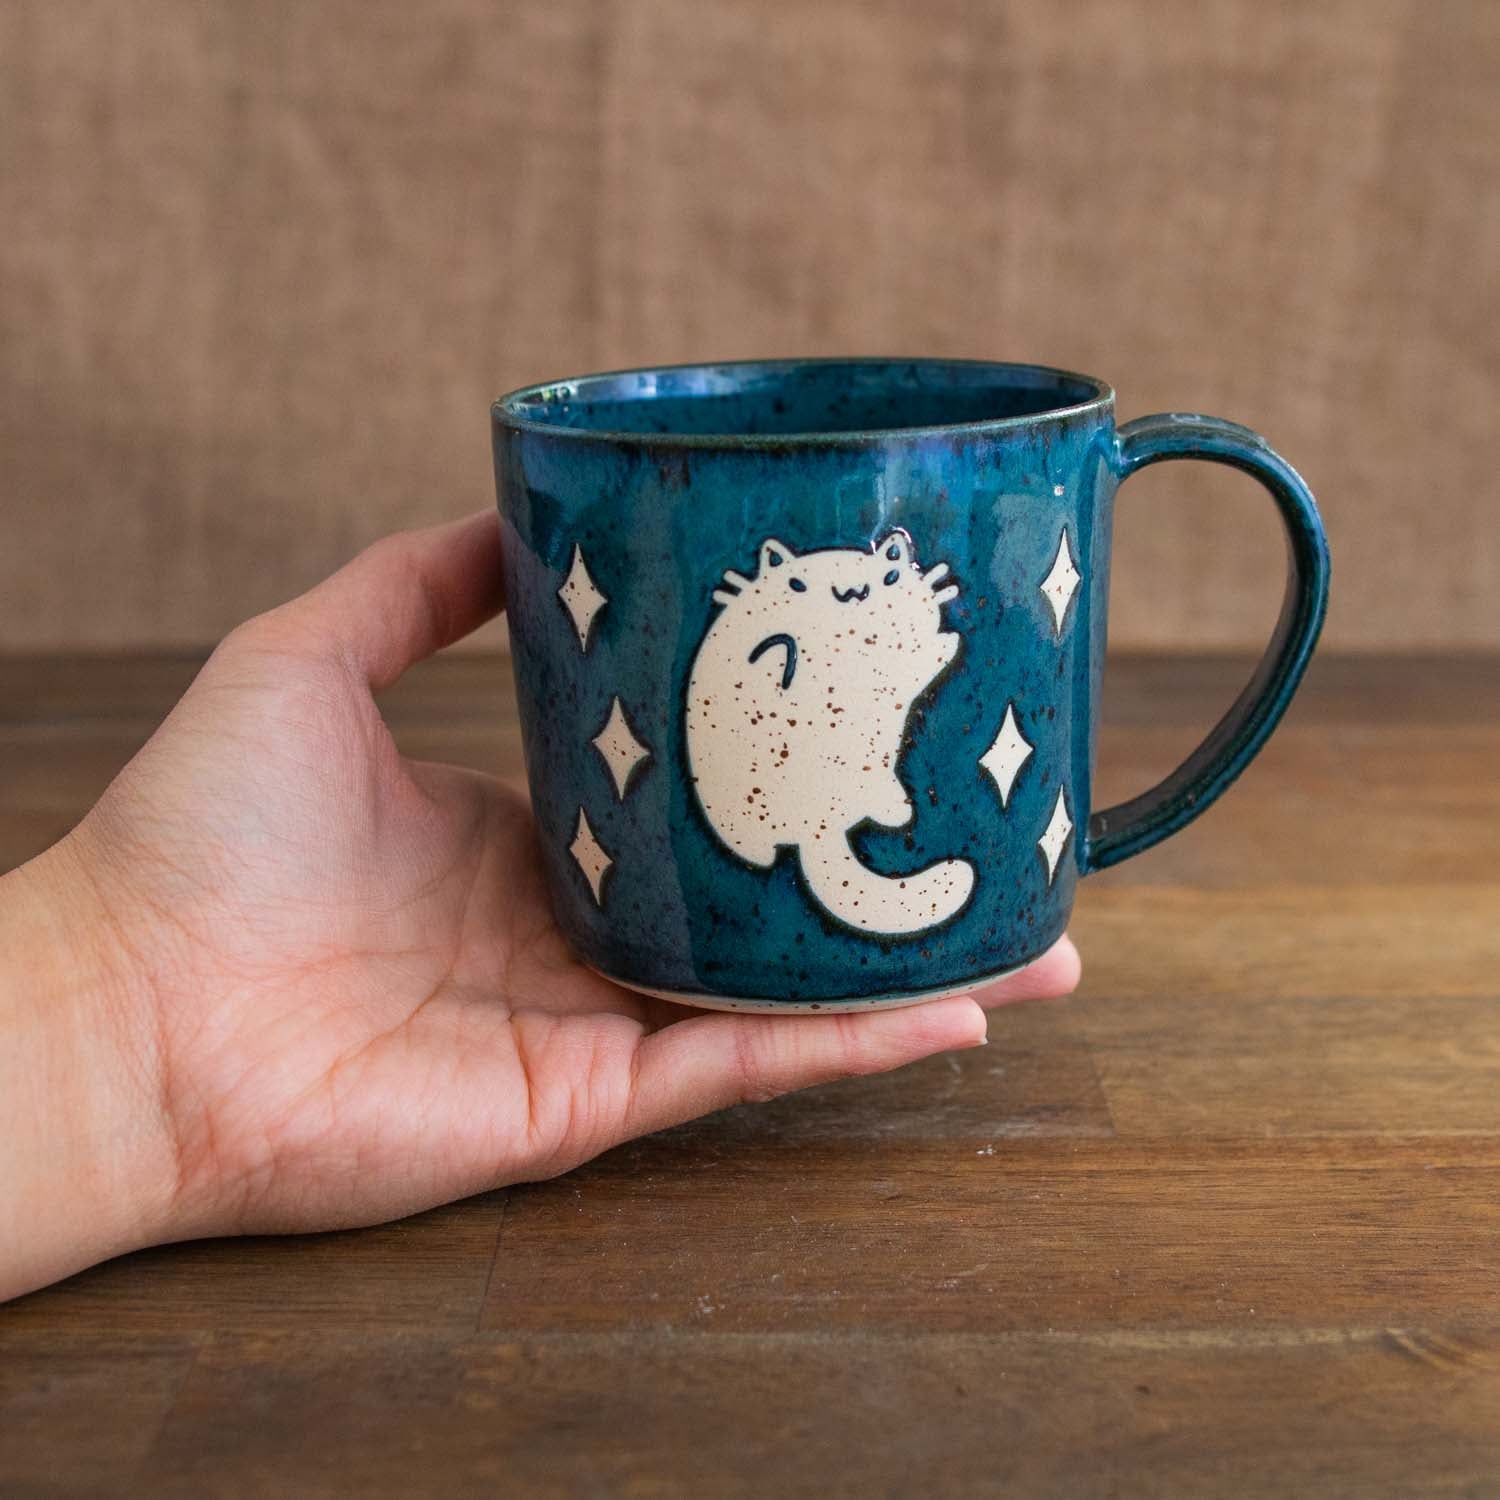 Frolicking space cat mug - 350 ml (12 oz)